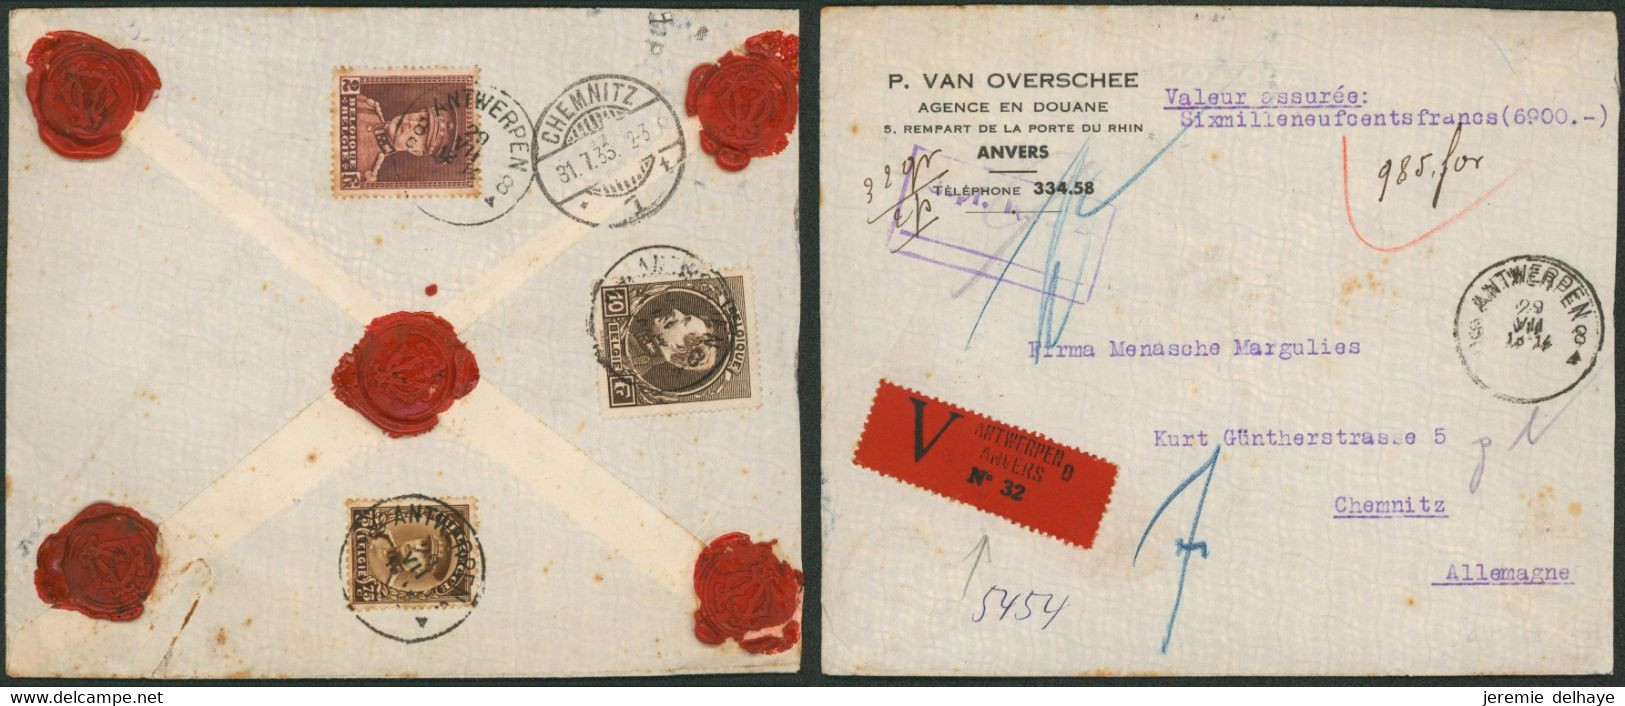 Affranc. Tricolore çàd N°289, 321 Et 341 Sur L. Assurée (6900 Frs, 32 Gr, 2 Ports) De Antwerpen (1933) > Chemnitz (AL) - 1929-1941 Grand Montenez